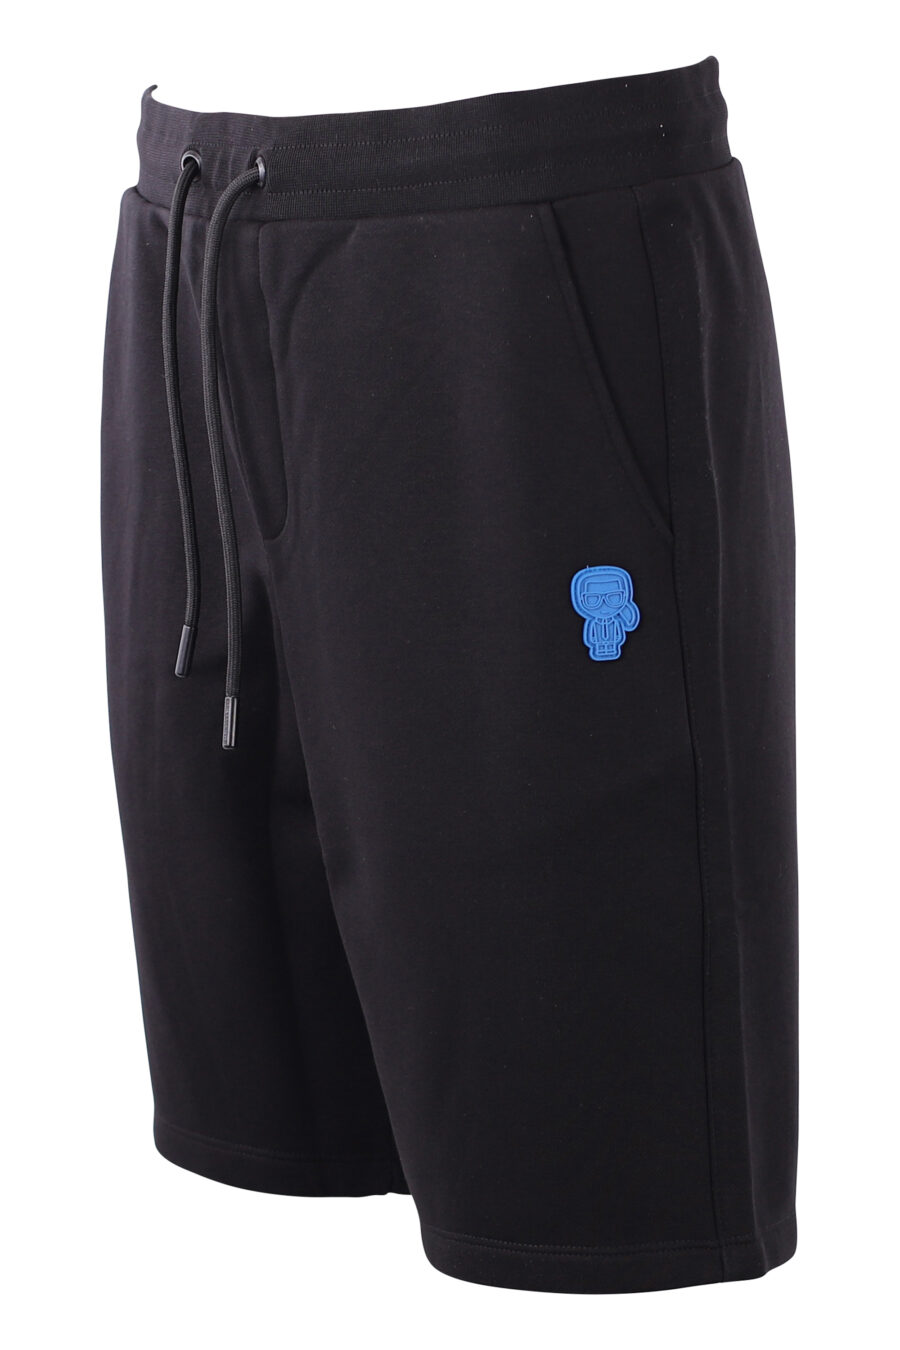 Tracksuit shorts black with blue logo - IMG 8584